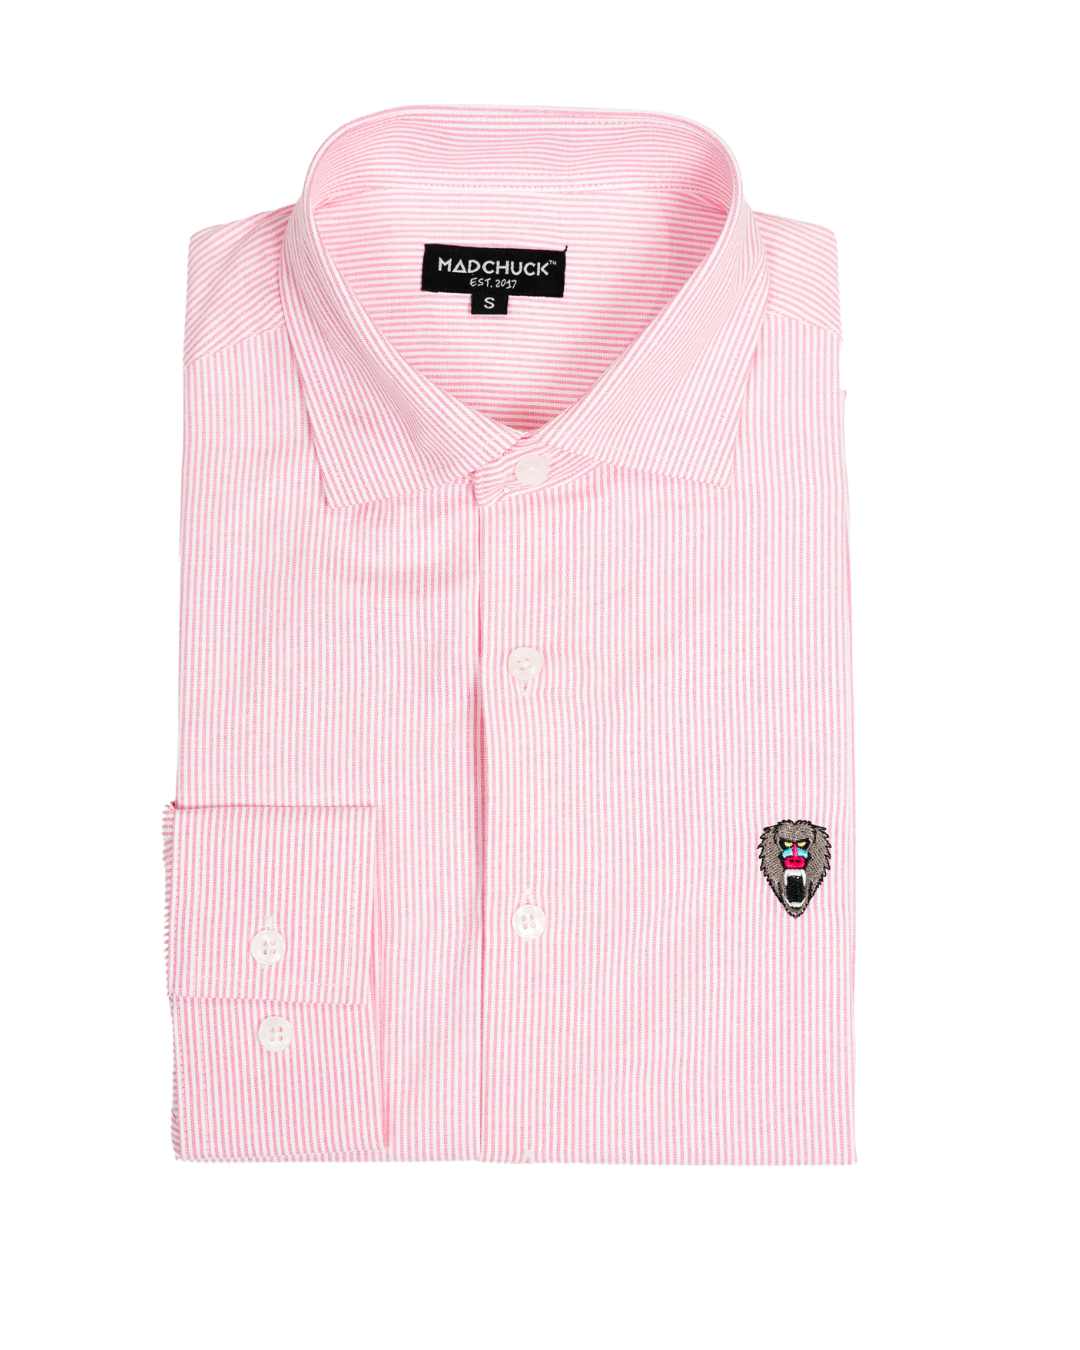 Pink Pin Stripe LS Oxford - Mad Chuck™